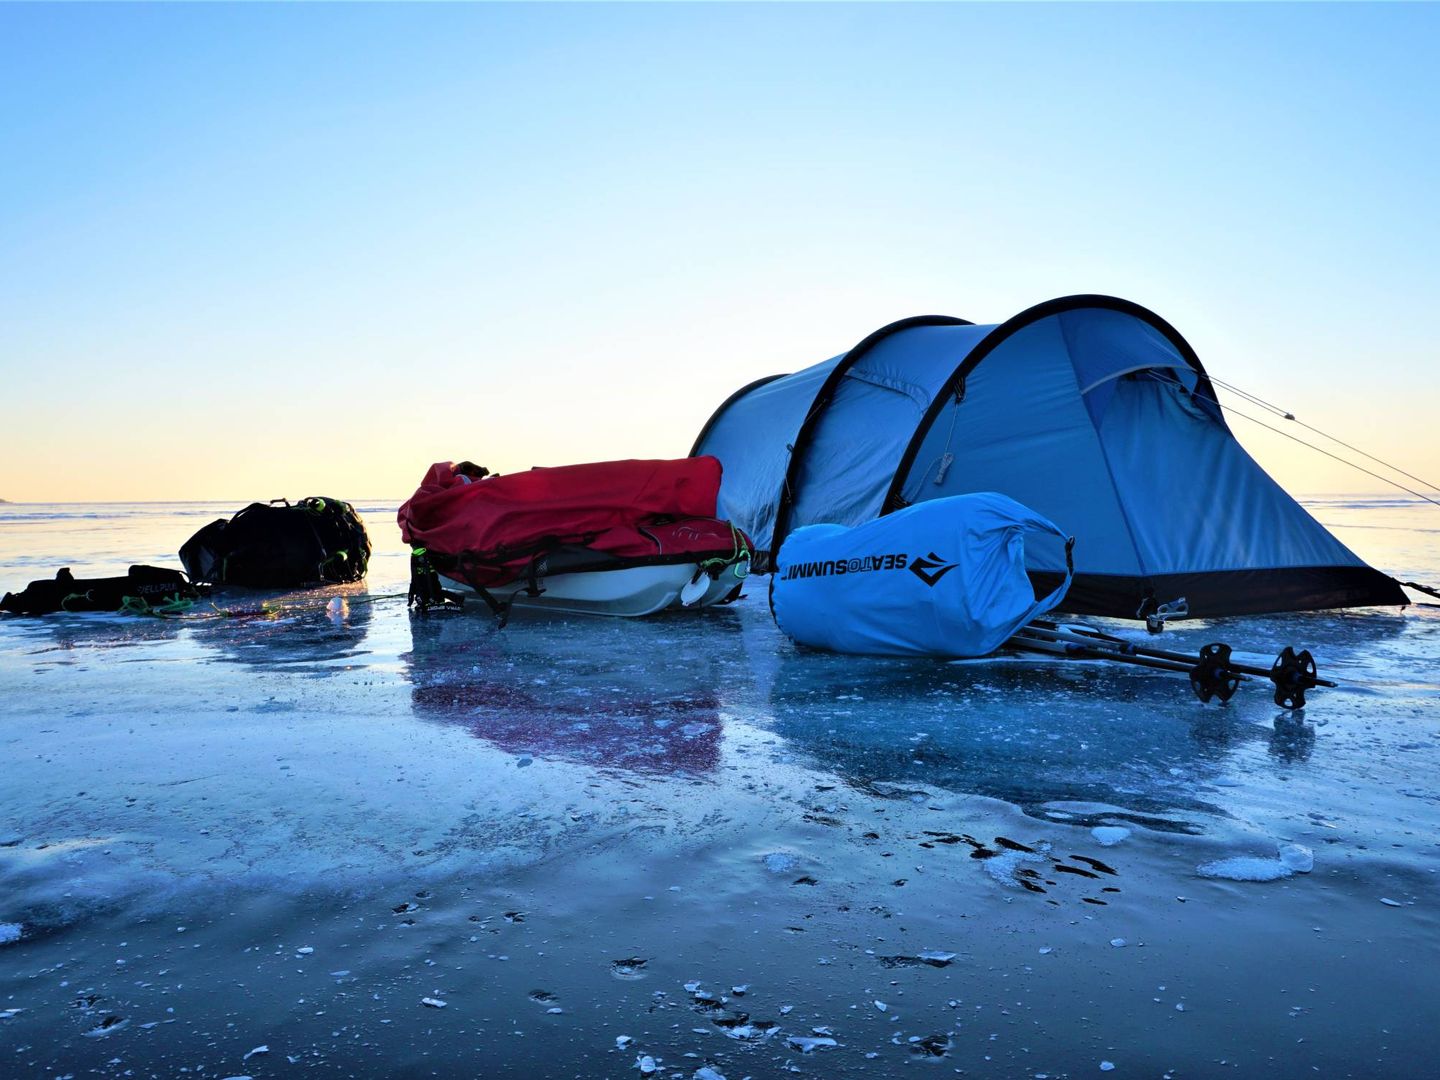 Refugio de José Trejo en el lago Baikal. (Imagen cedida)